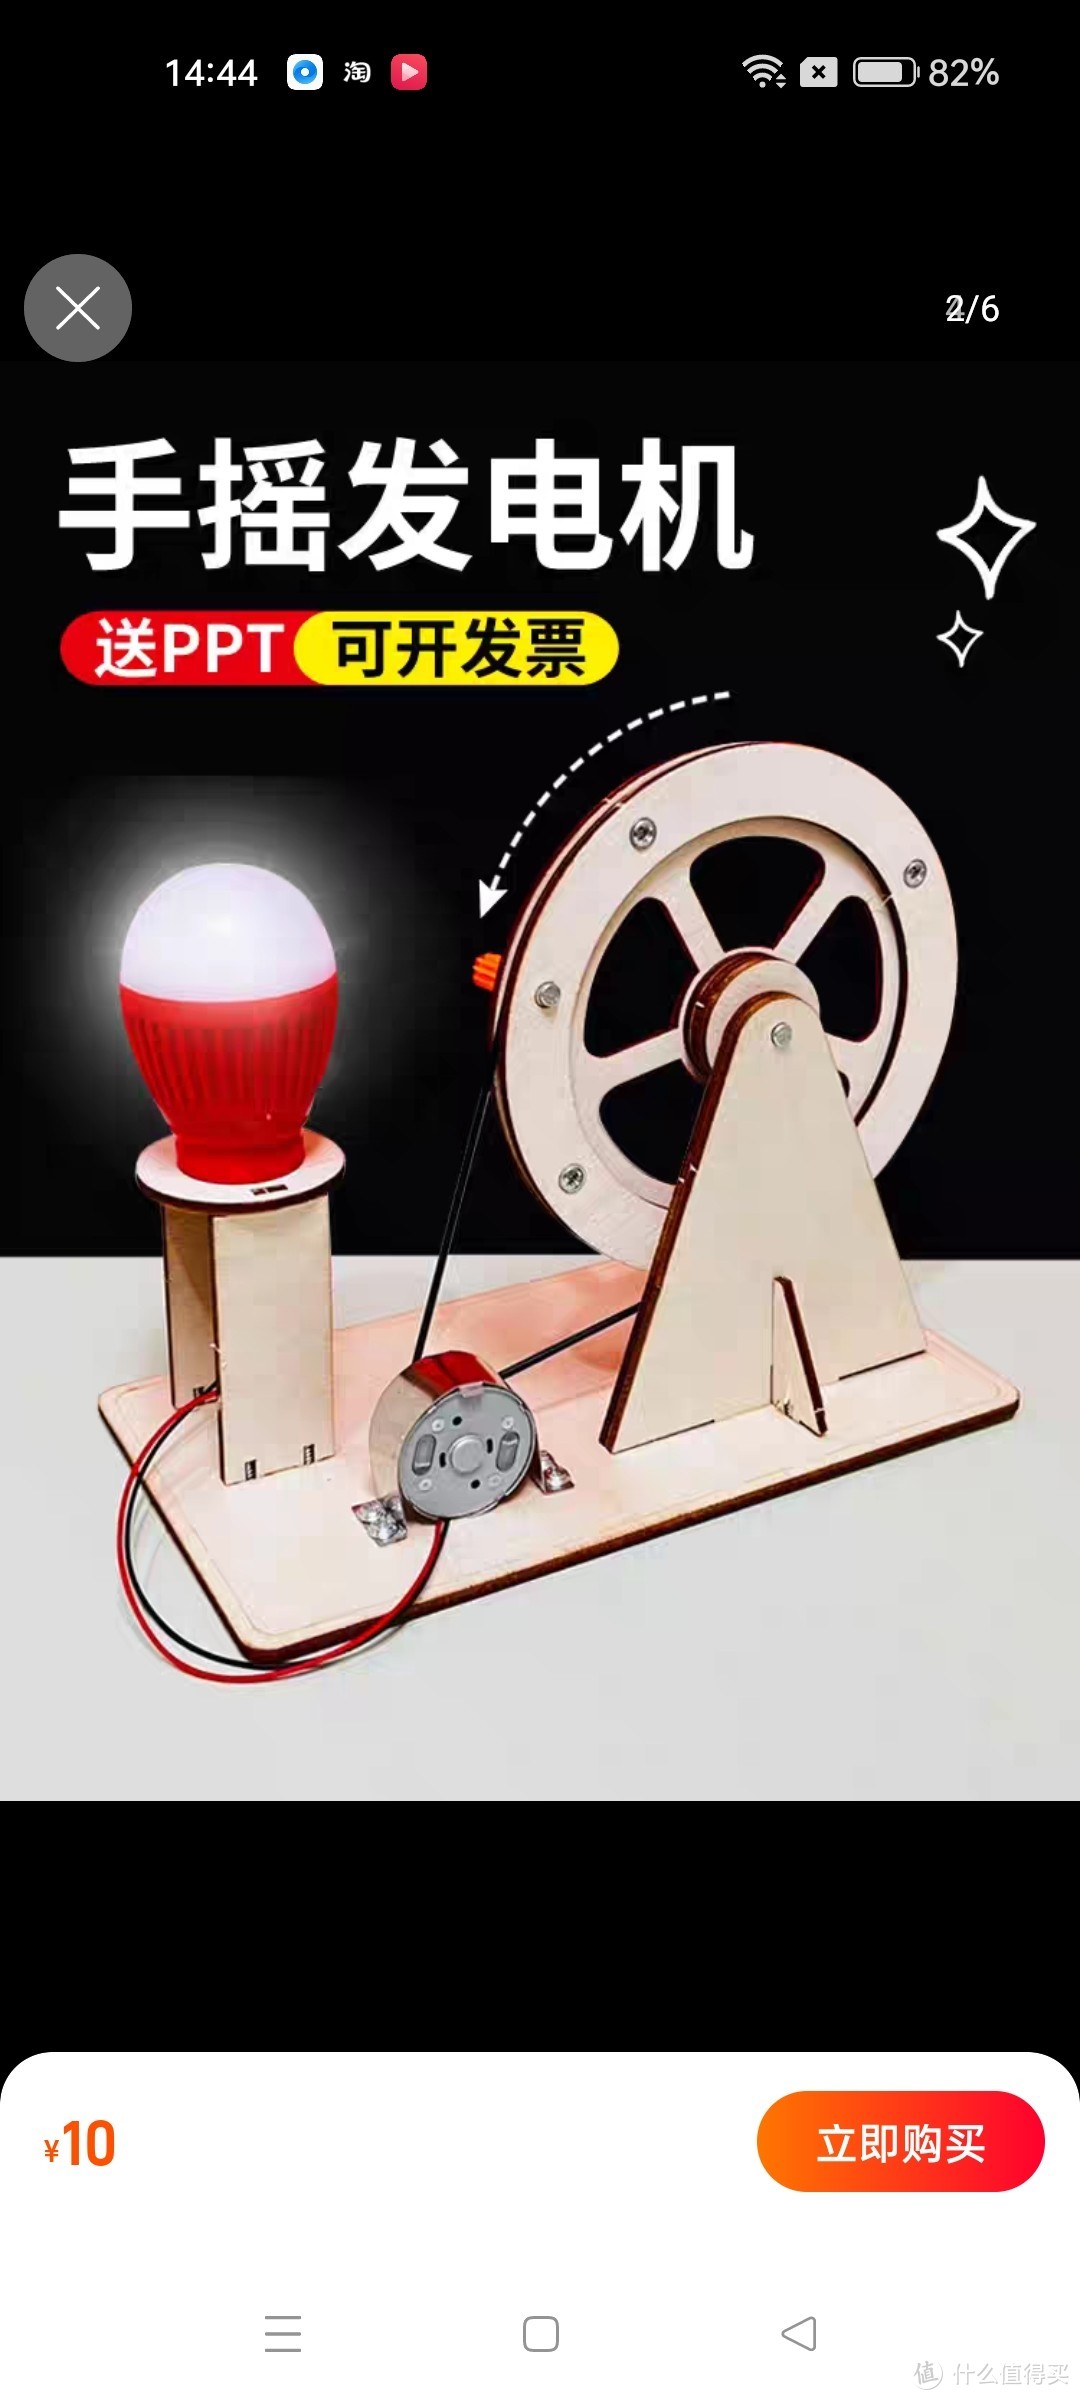 diy手摇发电机科学小手工 学生科技制作发明益智科普实验玩具礼物